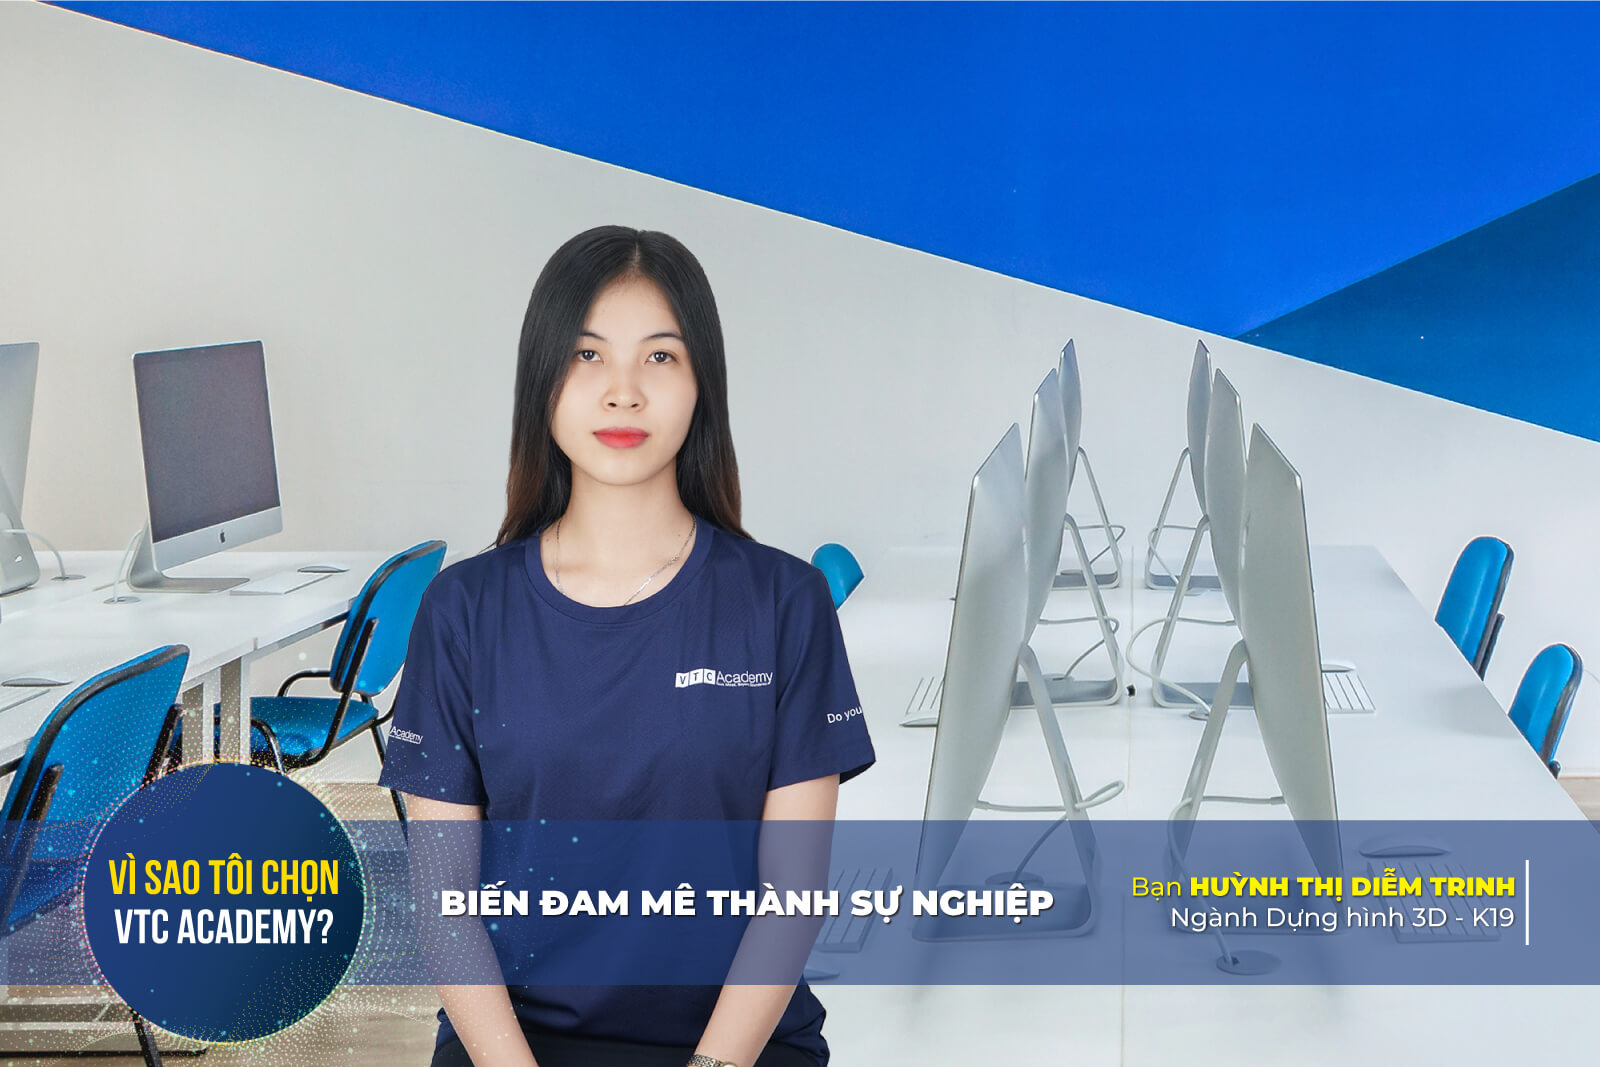 Trò chuyện cùng Diễm Trinh - Cô cử nhân quản trị kinh doanh quyết theo học Dựng hình 3D vì đam mê thiết kế